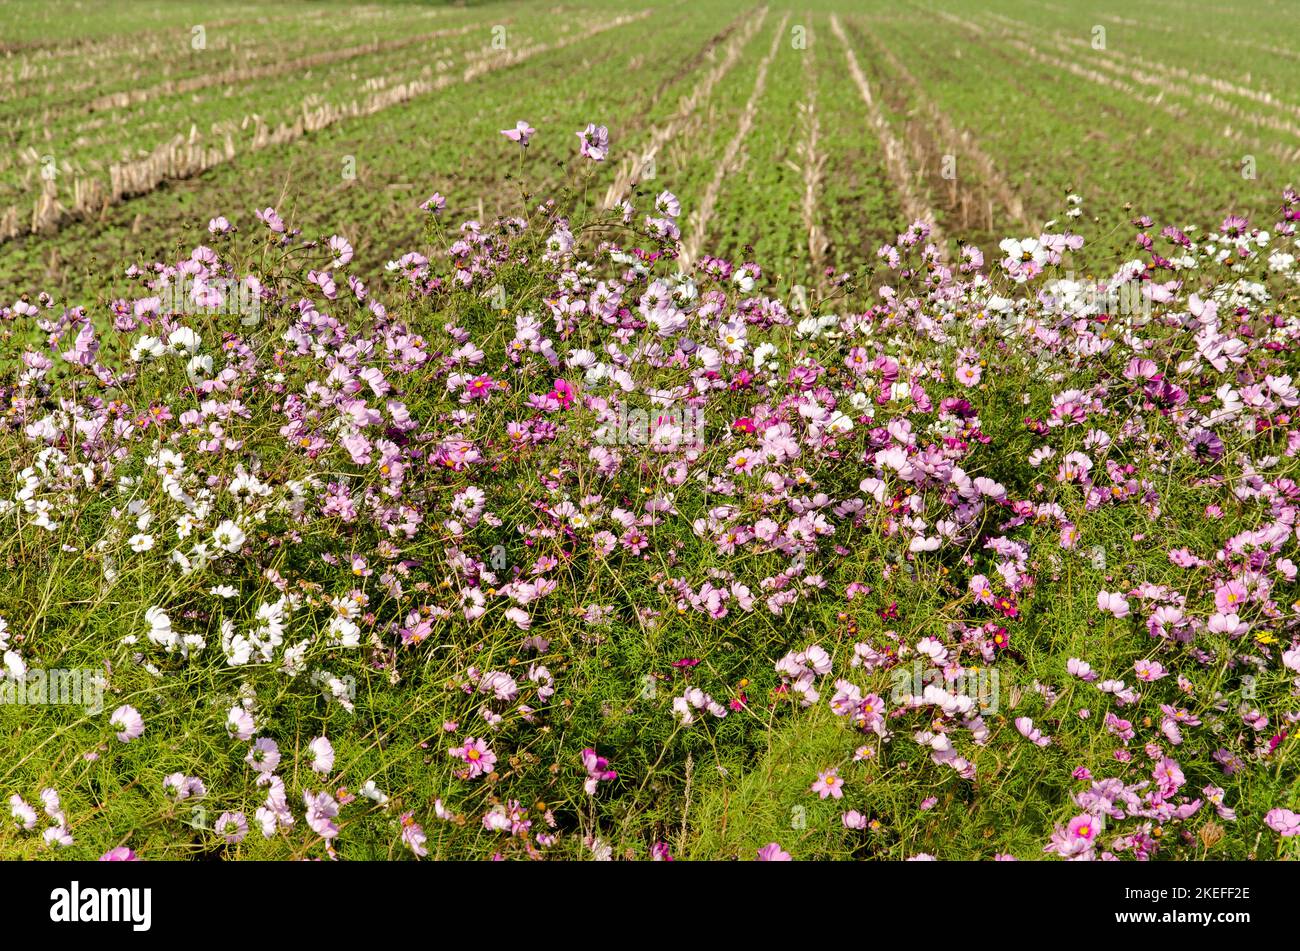 Letto di fiori come il bordo di un campo agricolo, creato per il bene della biodiversità, sull'isola di Schouwen-Duiveland nei Paesi Bassi Foto Stock